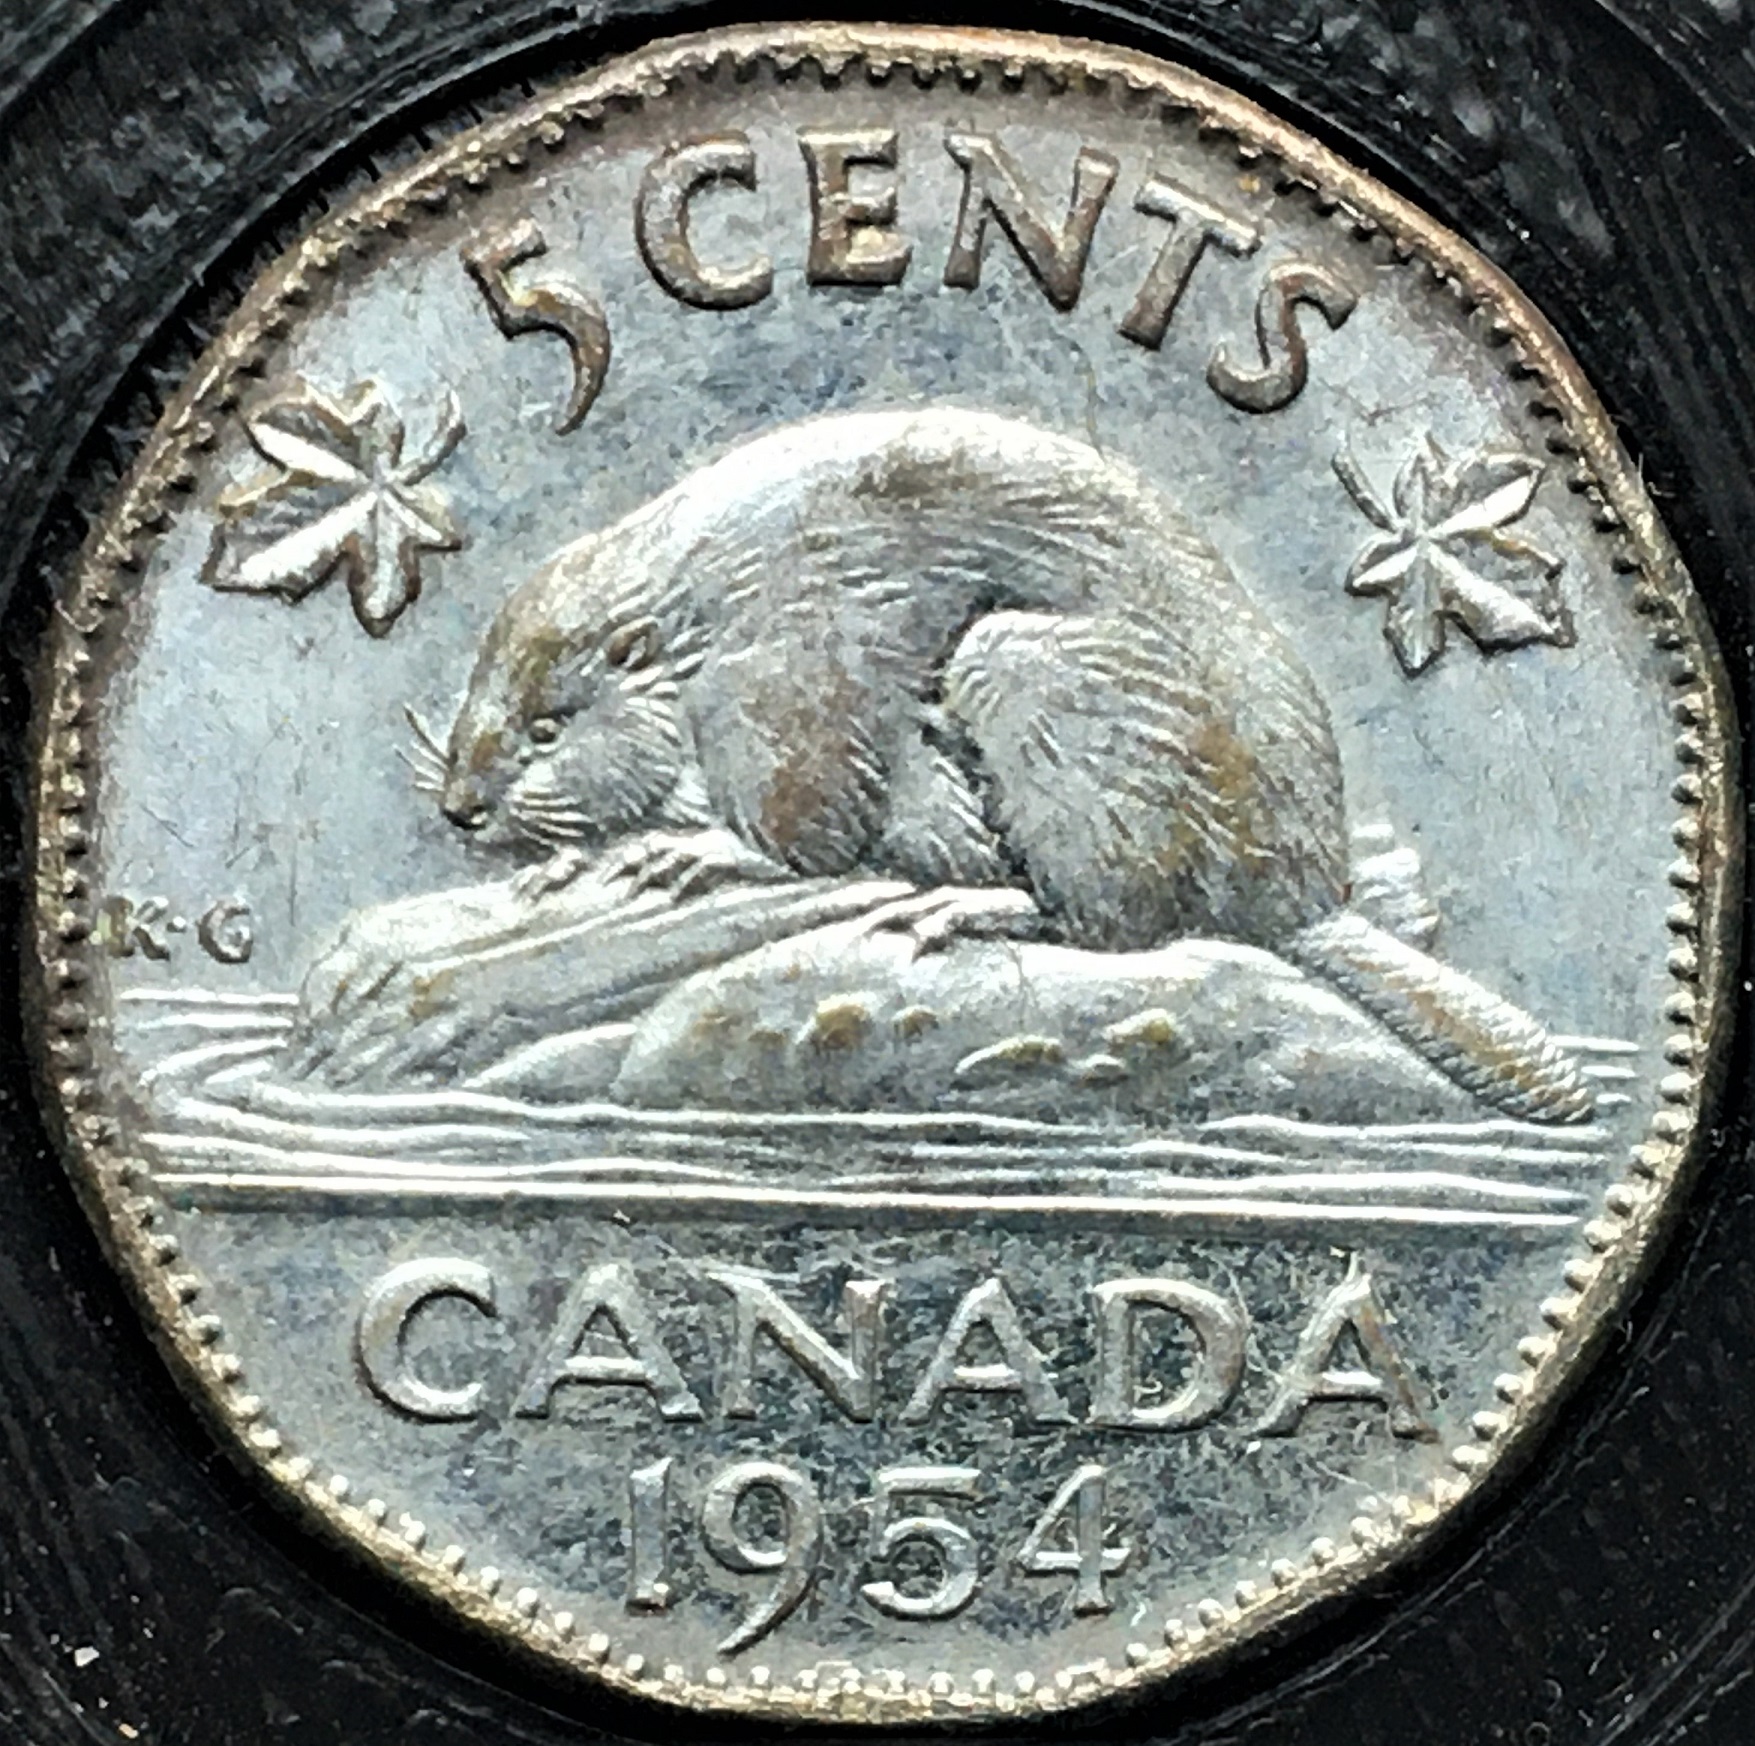 5 cents 1954 no chrome revers 60.jpg